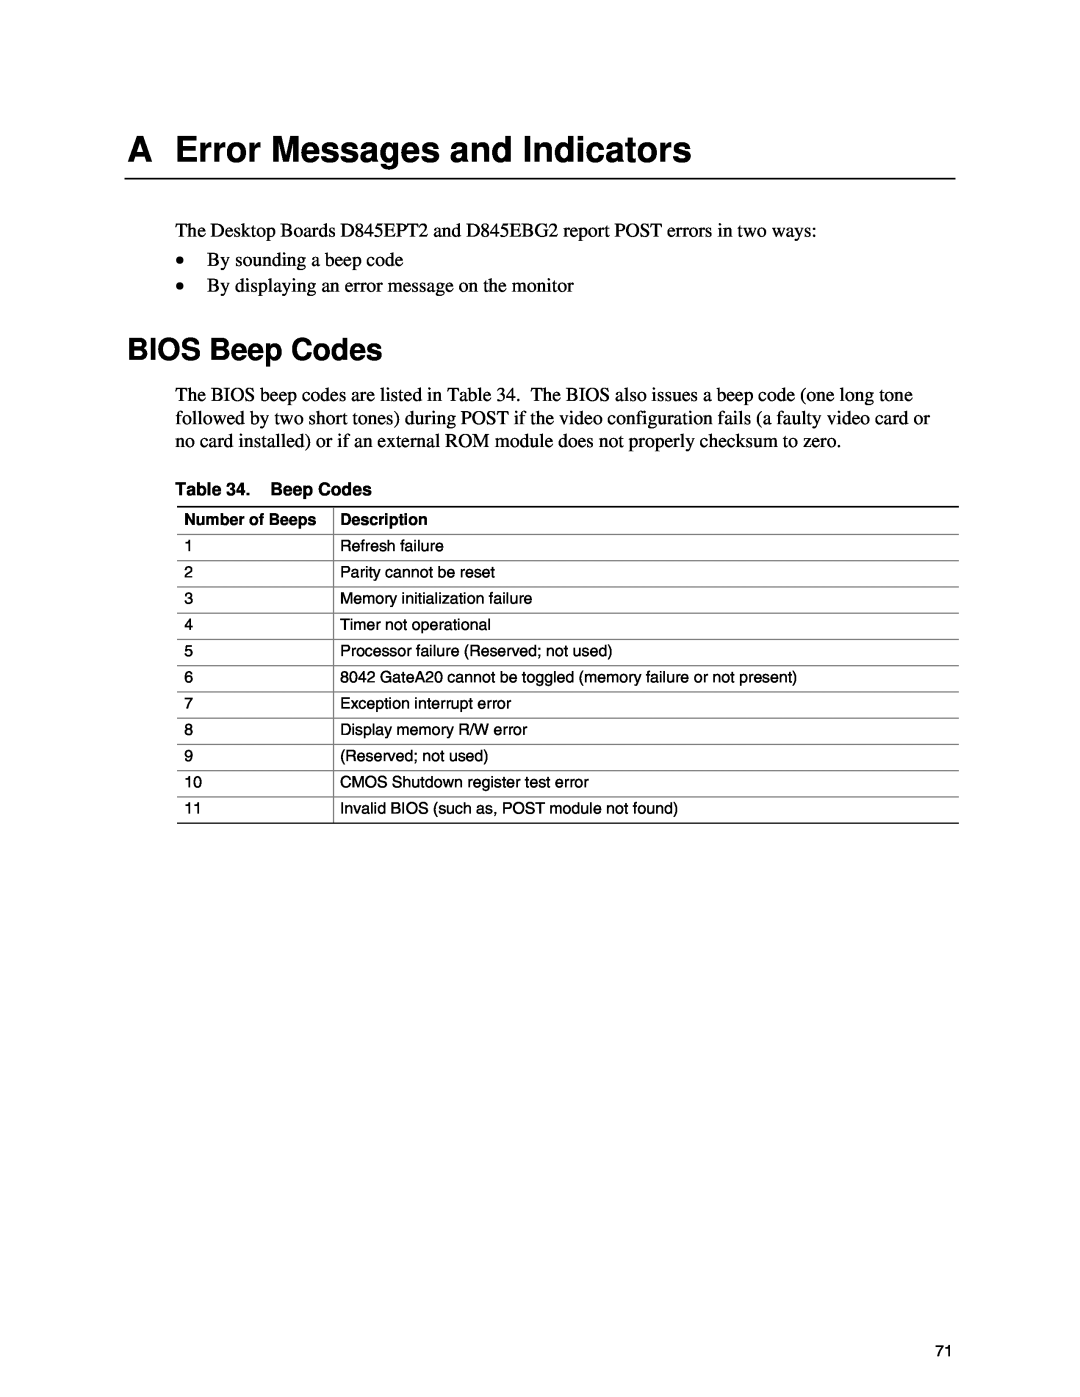 Intel D845EBG2, D845EPT2 manual A Error Messages and Indicators, BIOS Beep Codes 